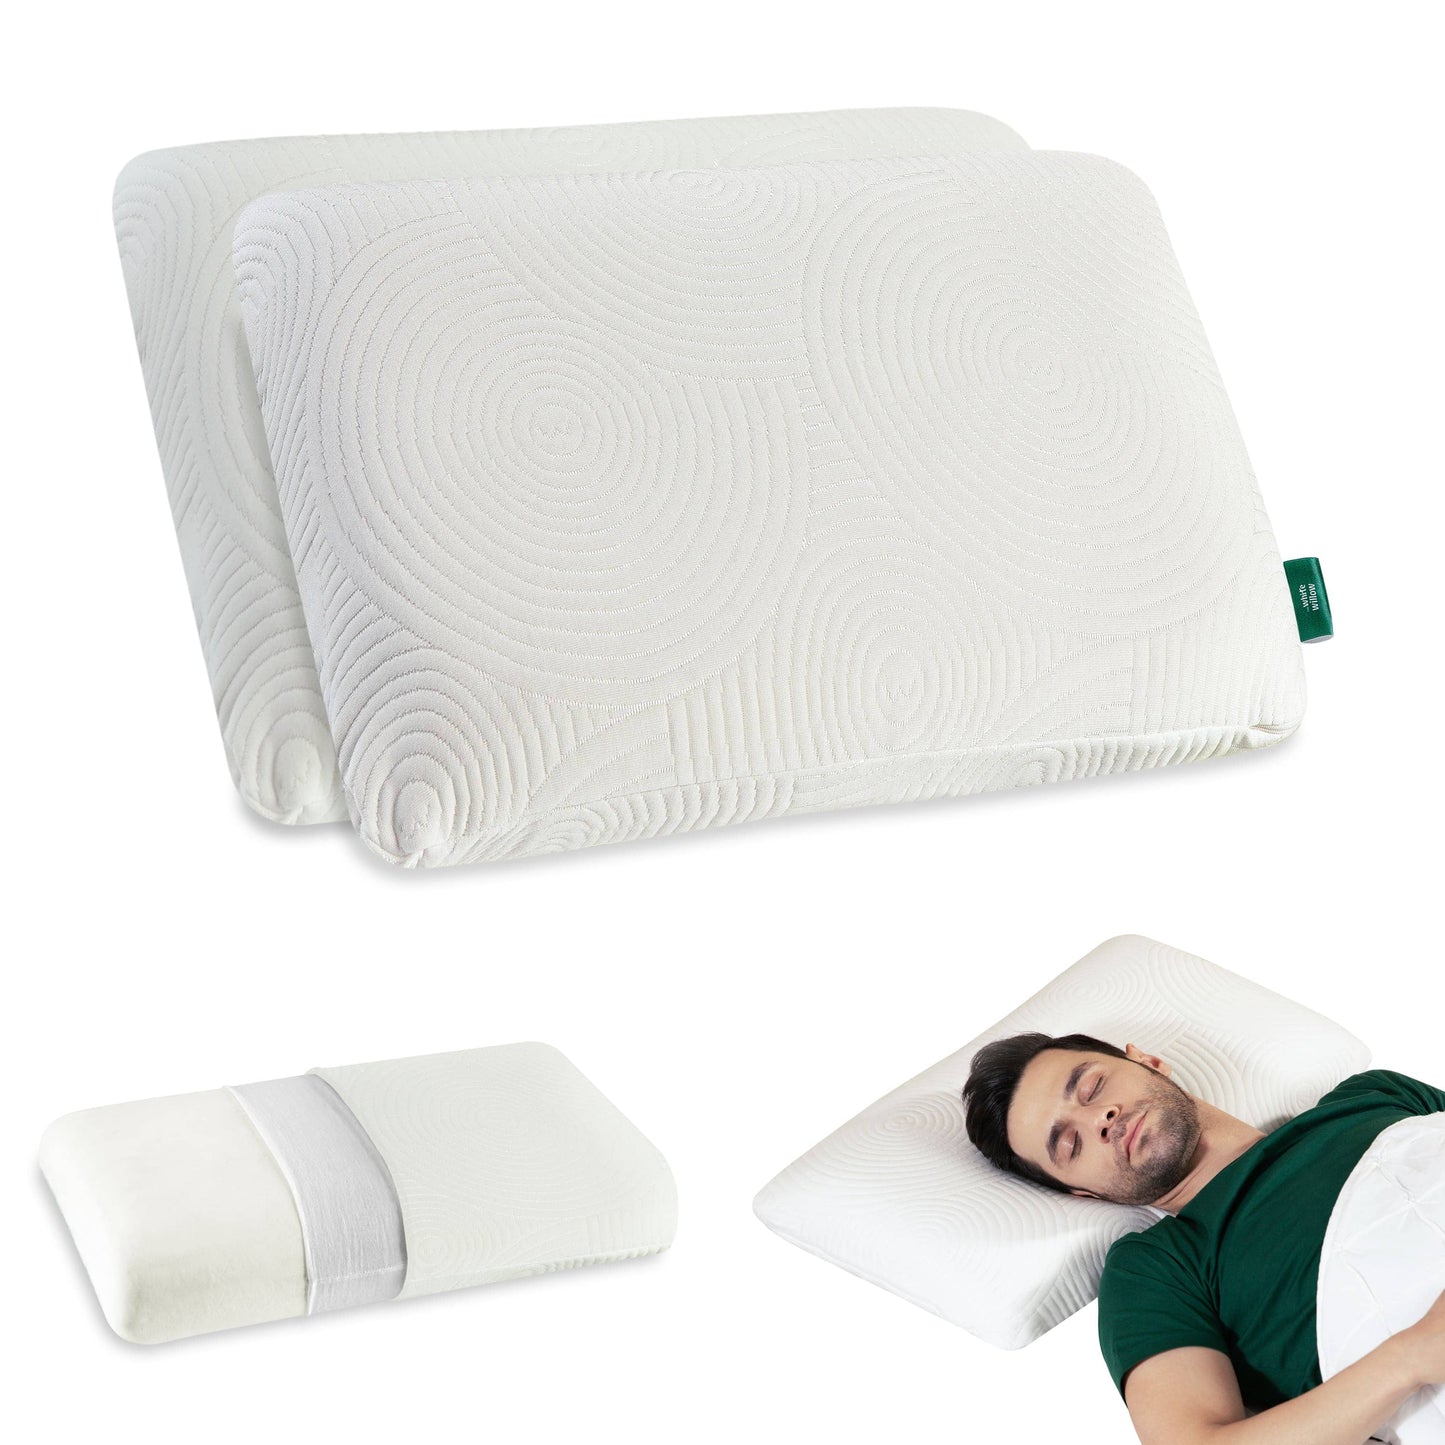 Cypress - Memory Foam Pillow - Regular - Medium Firm Regular Pillow The White Willow Medium 4"H Standard 22x14 Pack of 2 White